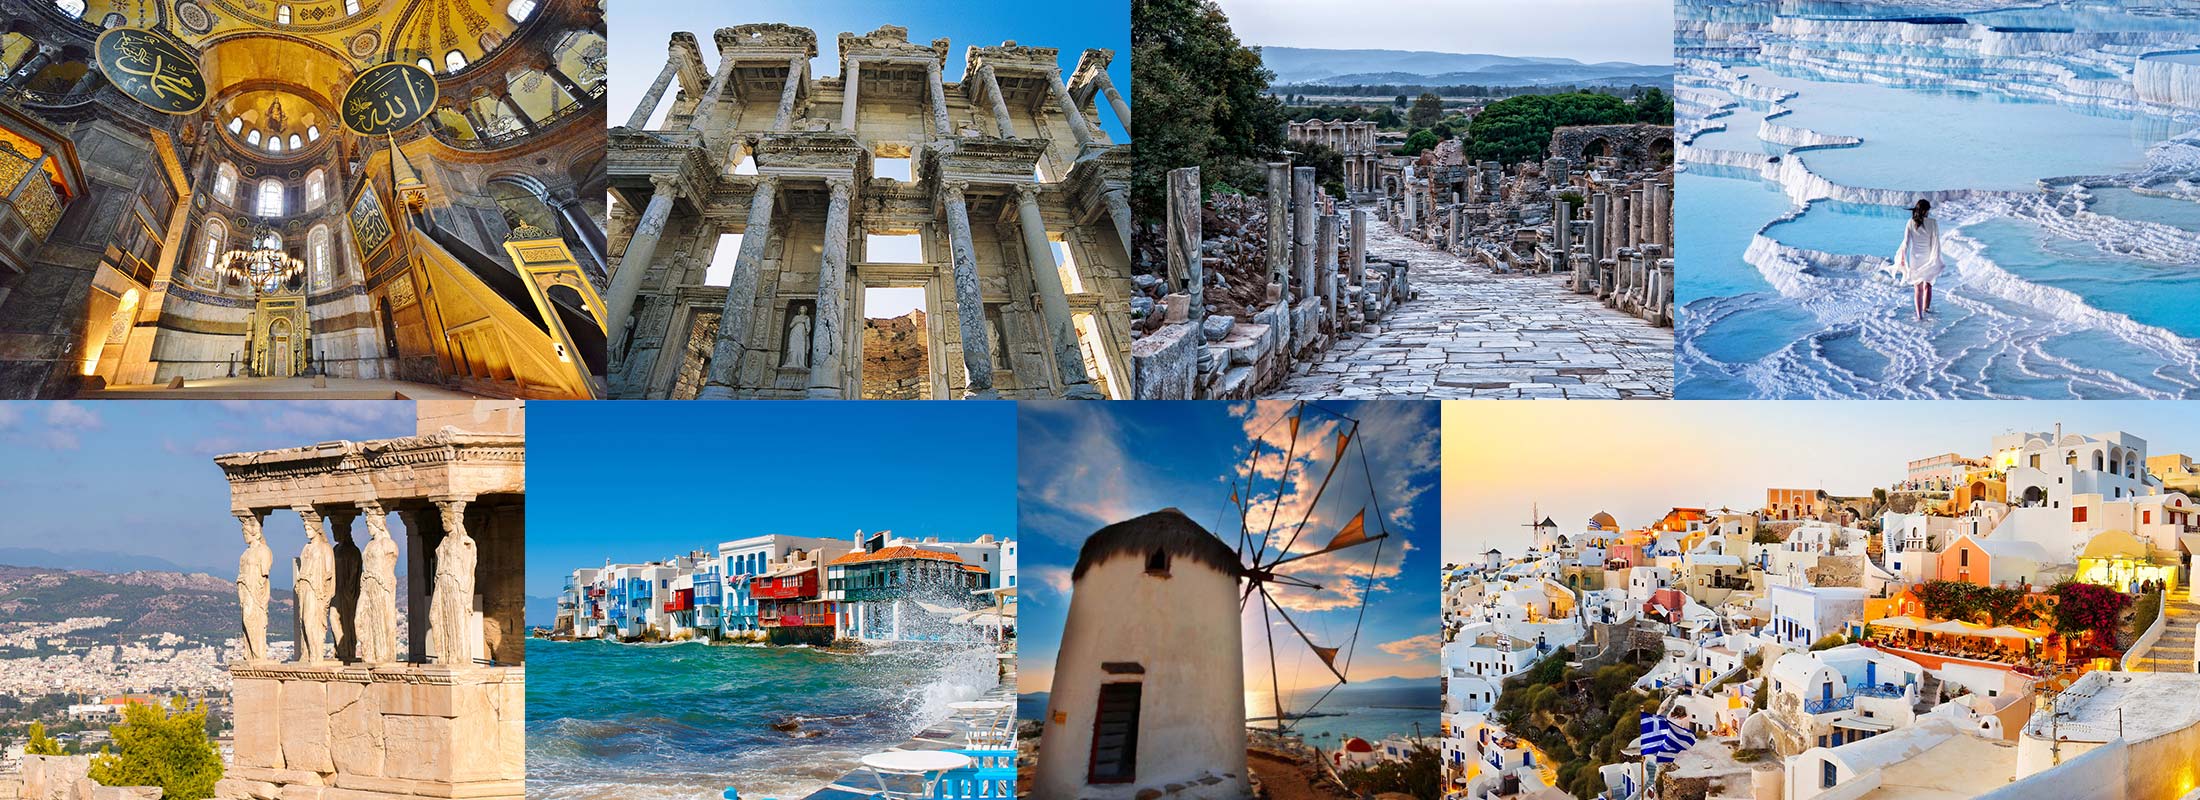 8-DAYS-TURKEY-GREECE-PACKAGE-TOUR-ISTANBUL-PHESUS-PAMUKKALE-ATHENS-SANTORINI-MYKONOS